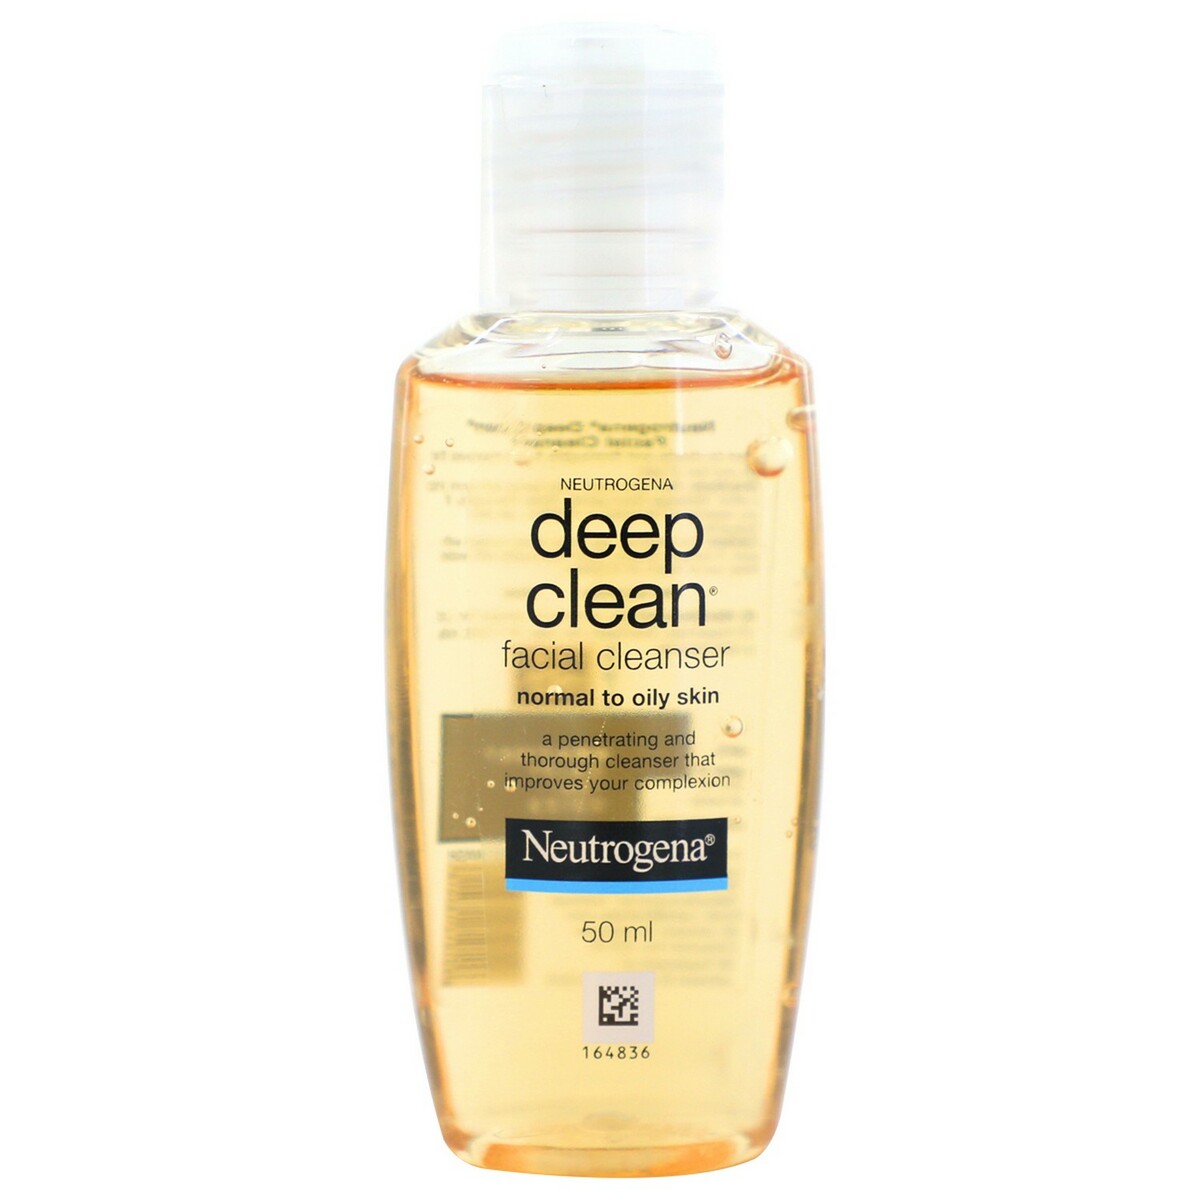 Neutrogena Facial Cleanser Deep Clean 50ml